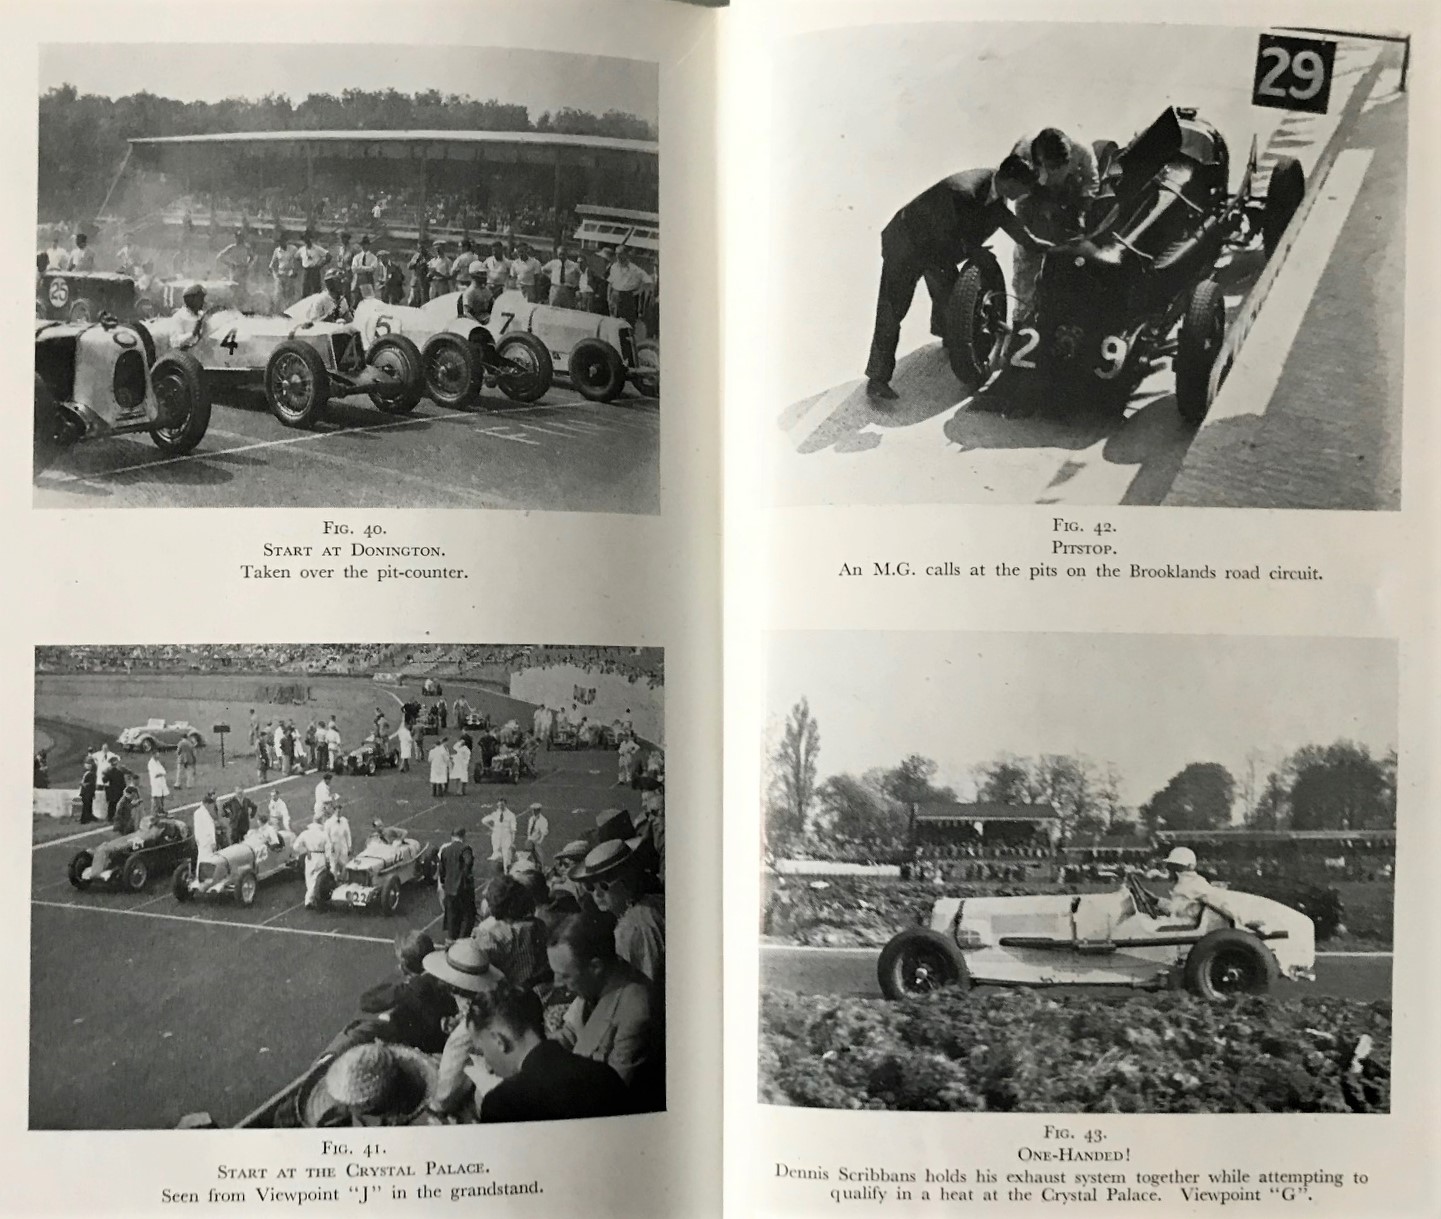 Speed Camera, engelsk bok om racing-fotografering under 30- och 40-talet, ca 120 sidor